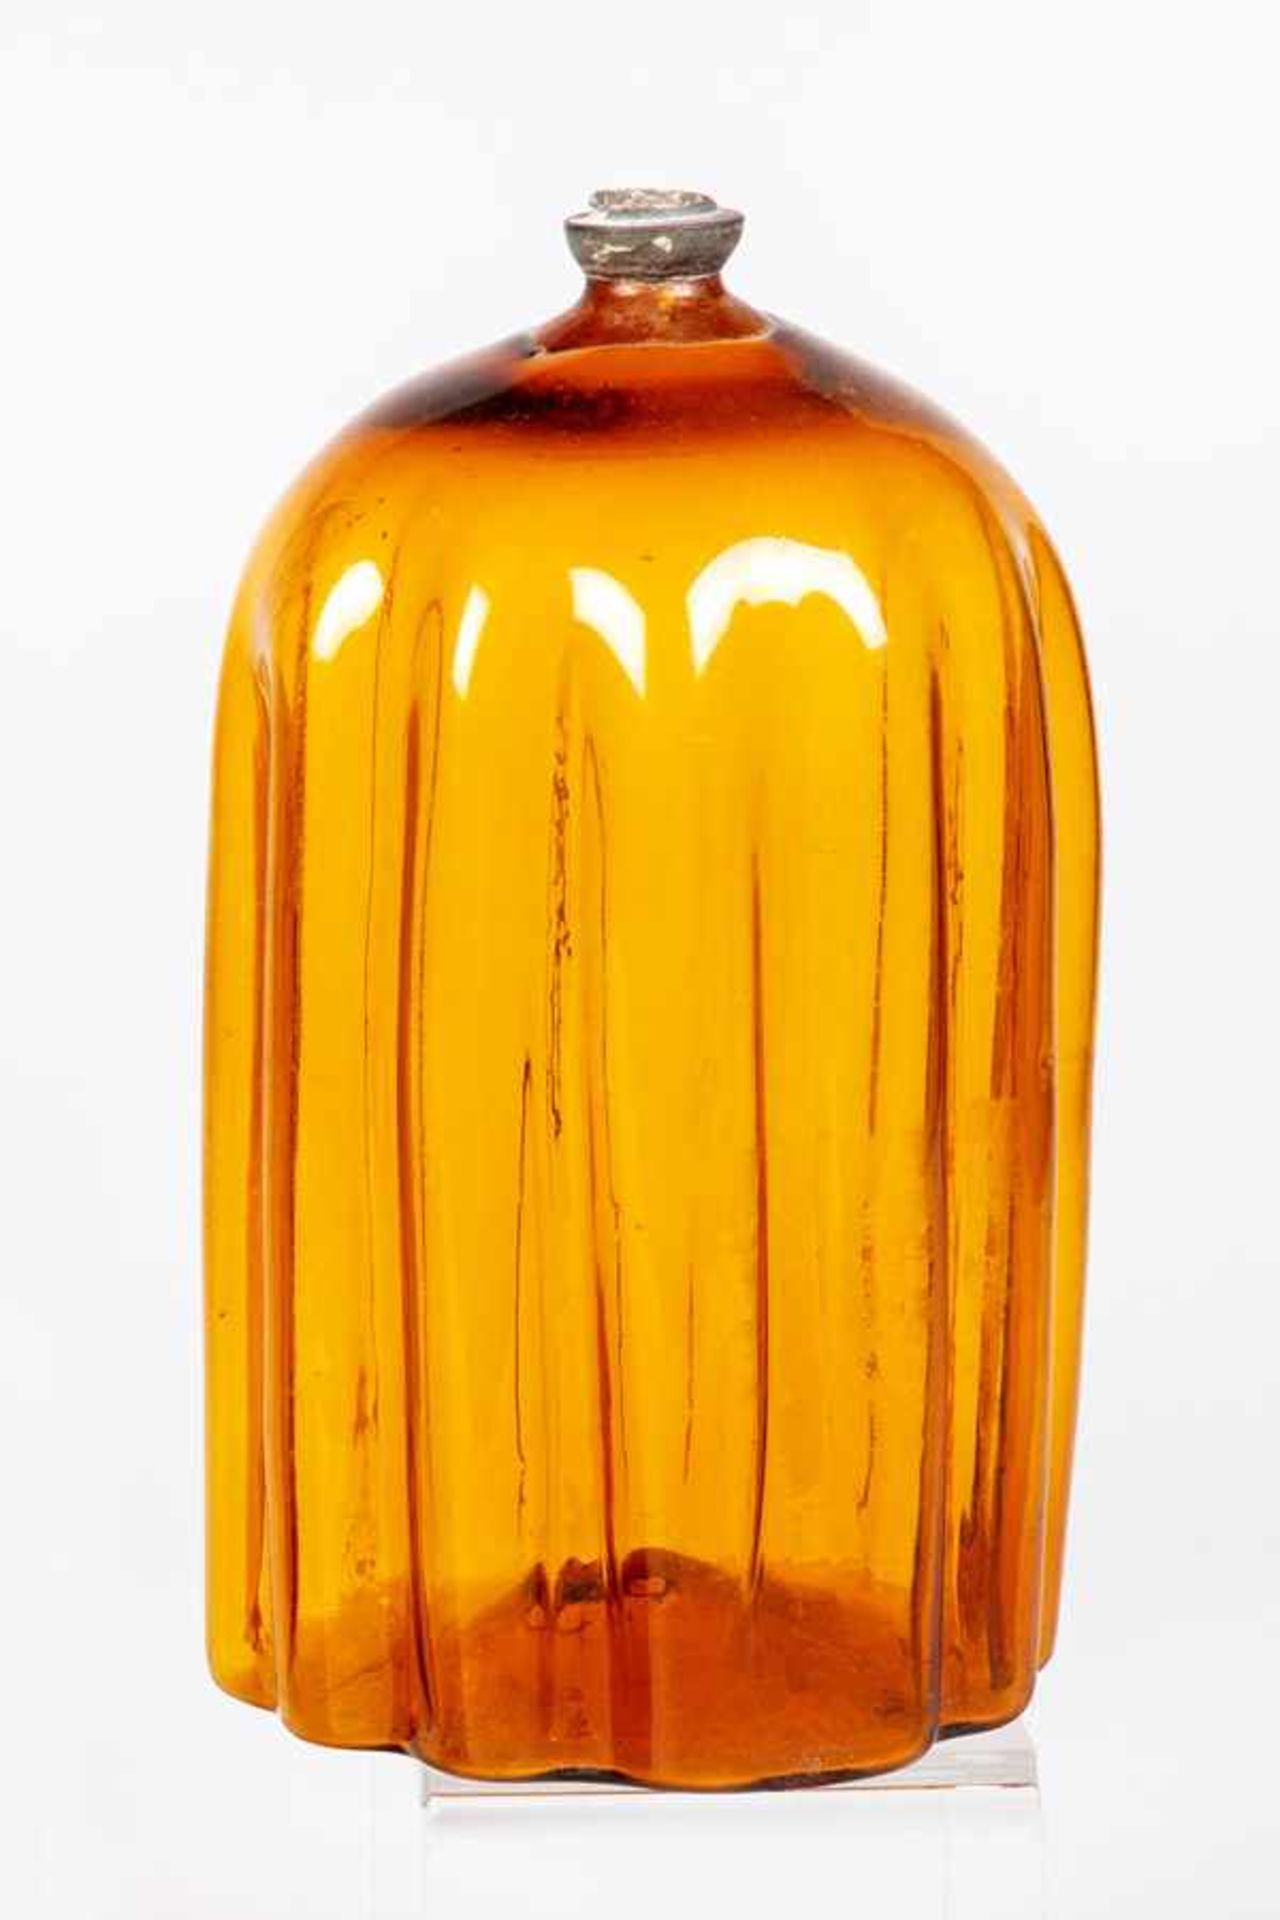 Seltene Schnapsflasche aus braunem GlasAlpenländisch, Tirol, um 1700 Zwölfpassige Wandung mit leicht